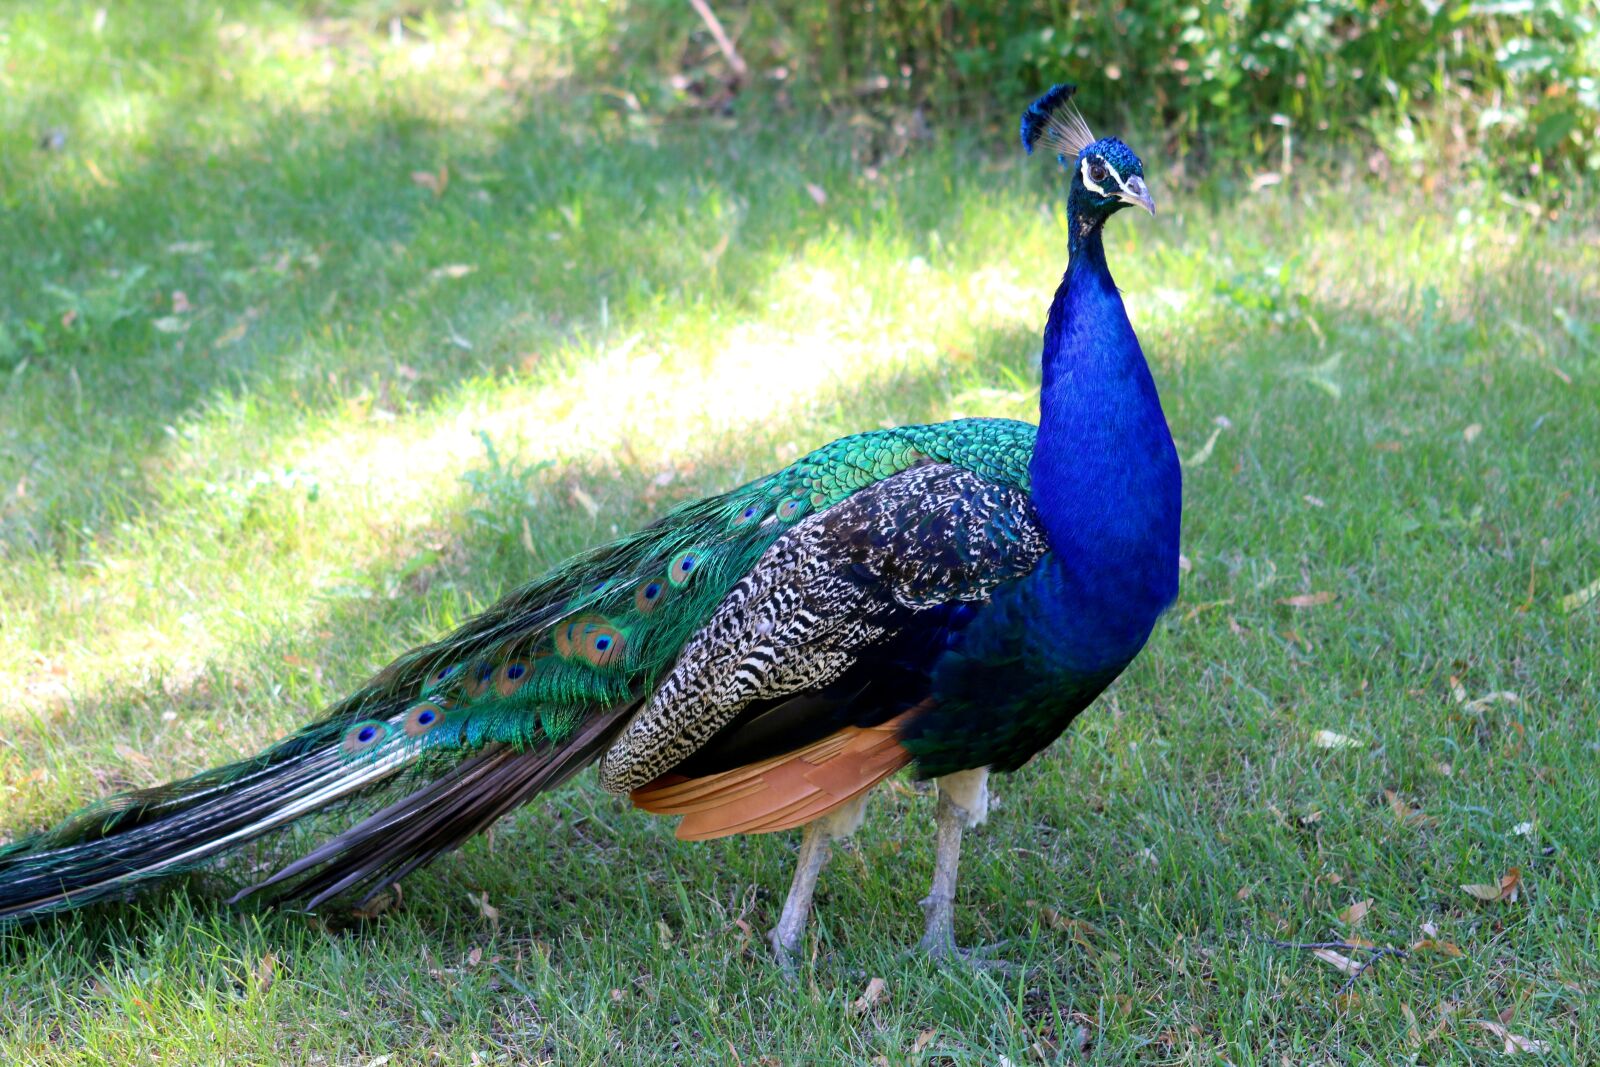 Canon EOS 70D sample photo. Peacock, bird, wildlife photography